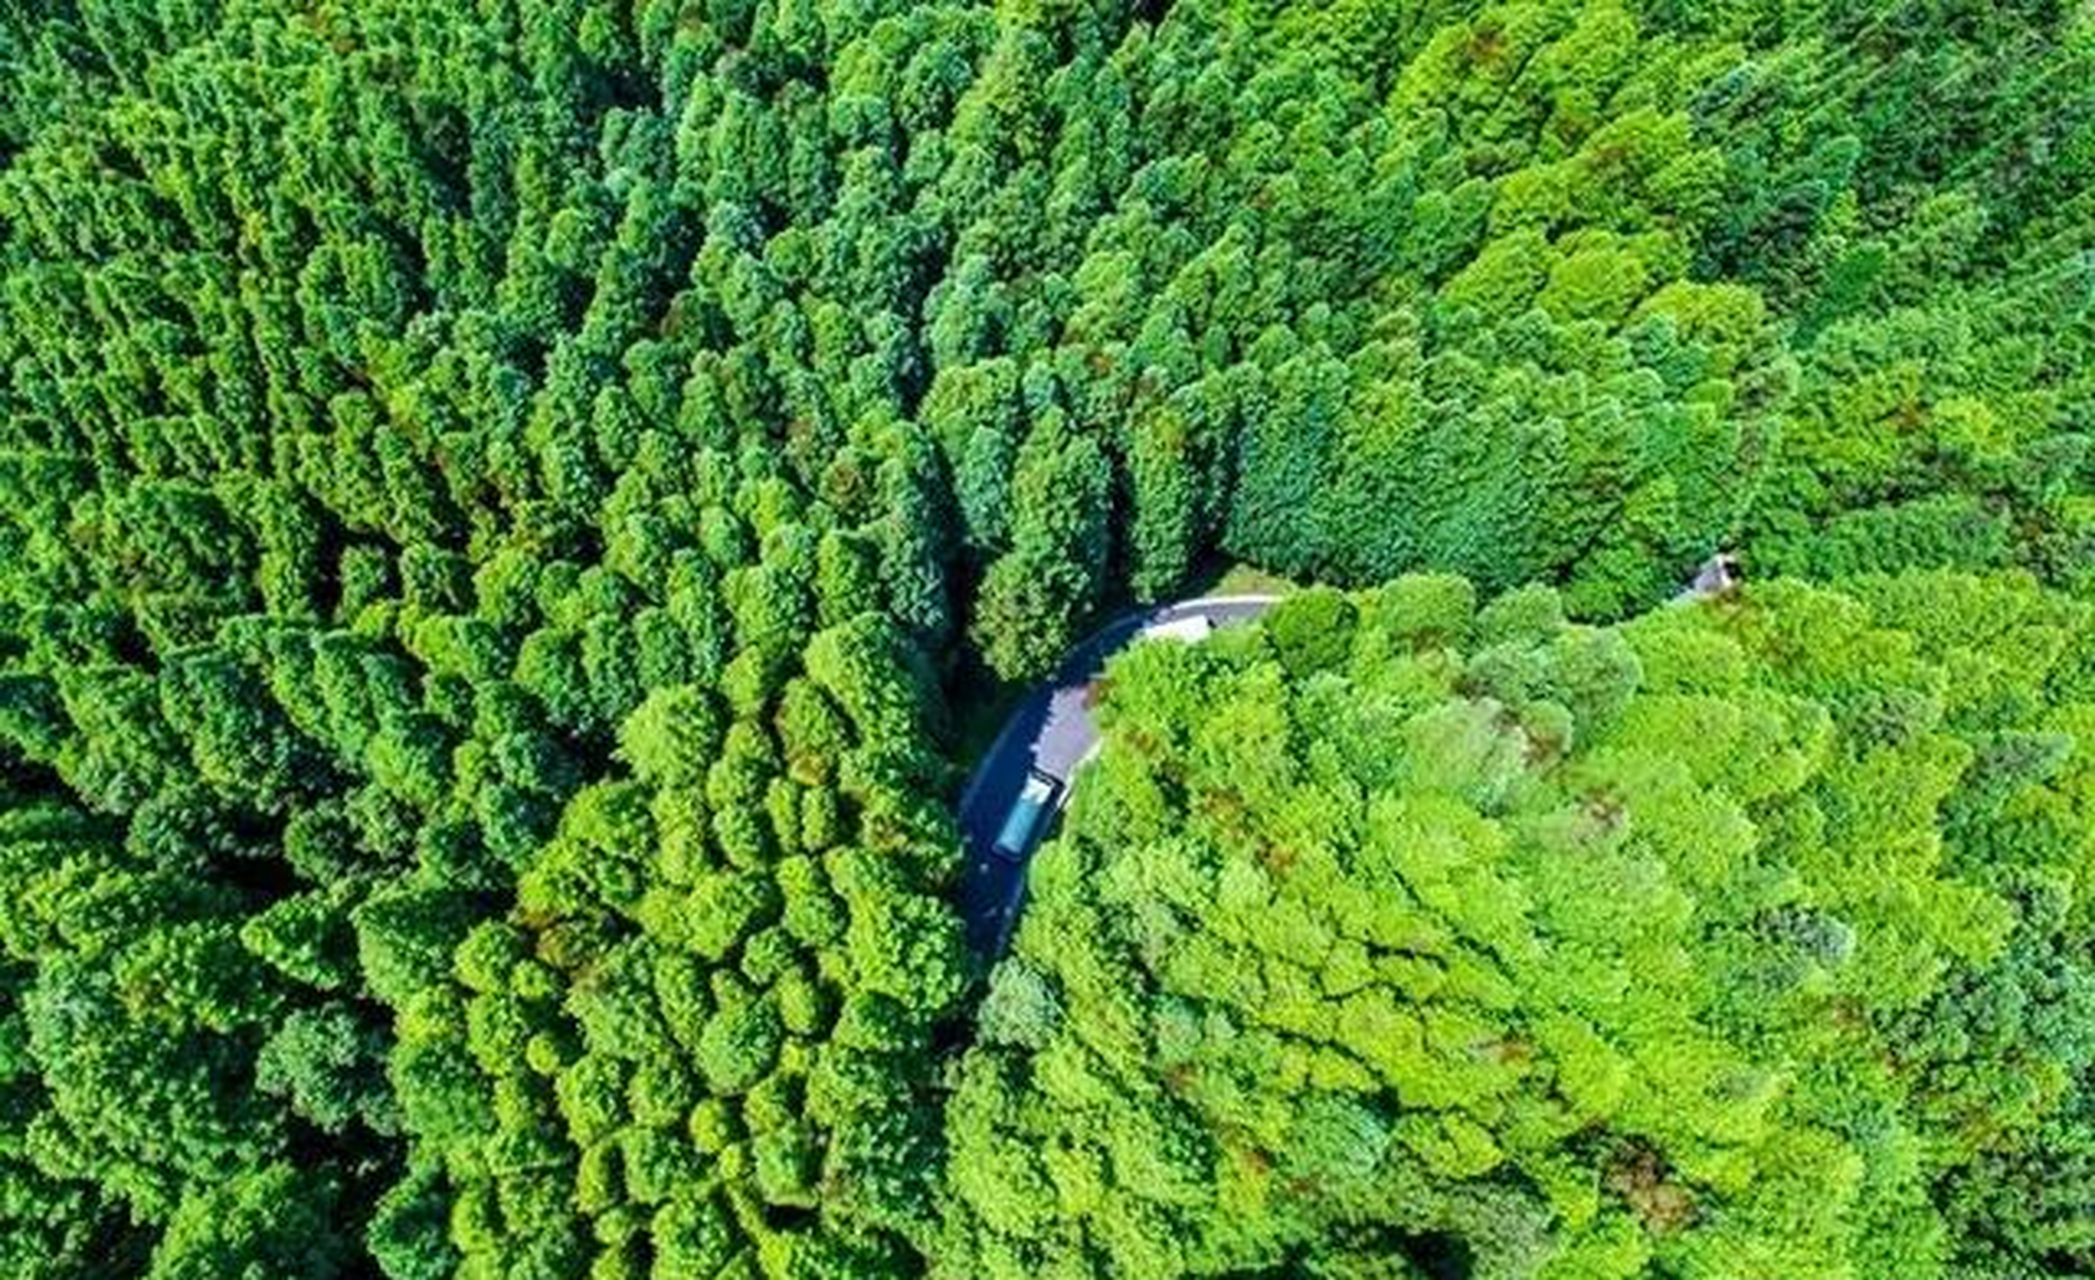 重庆山王坪:是国内探明面积最大,特色最显著的生态石林,占地524亩